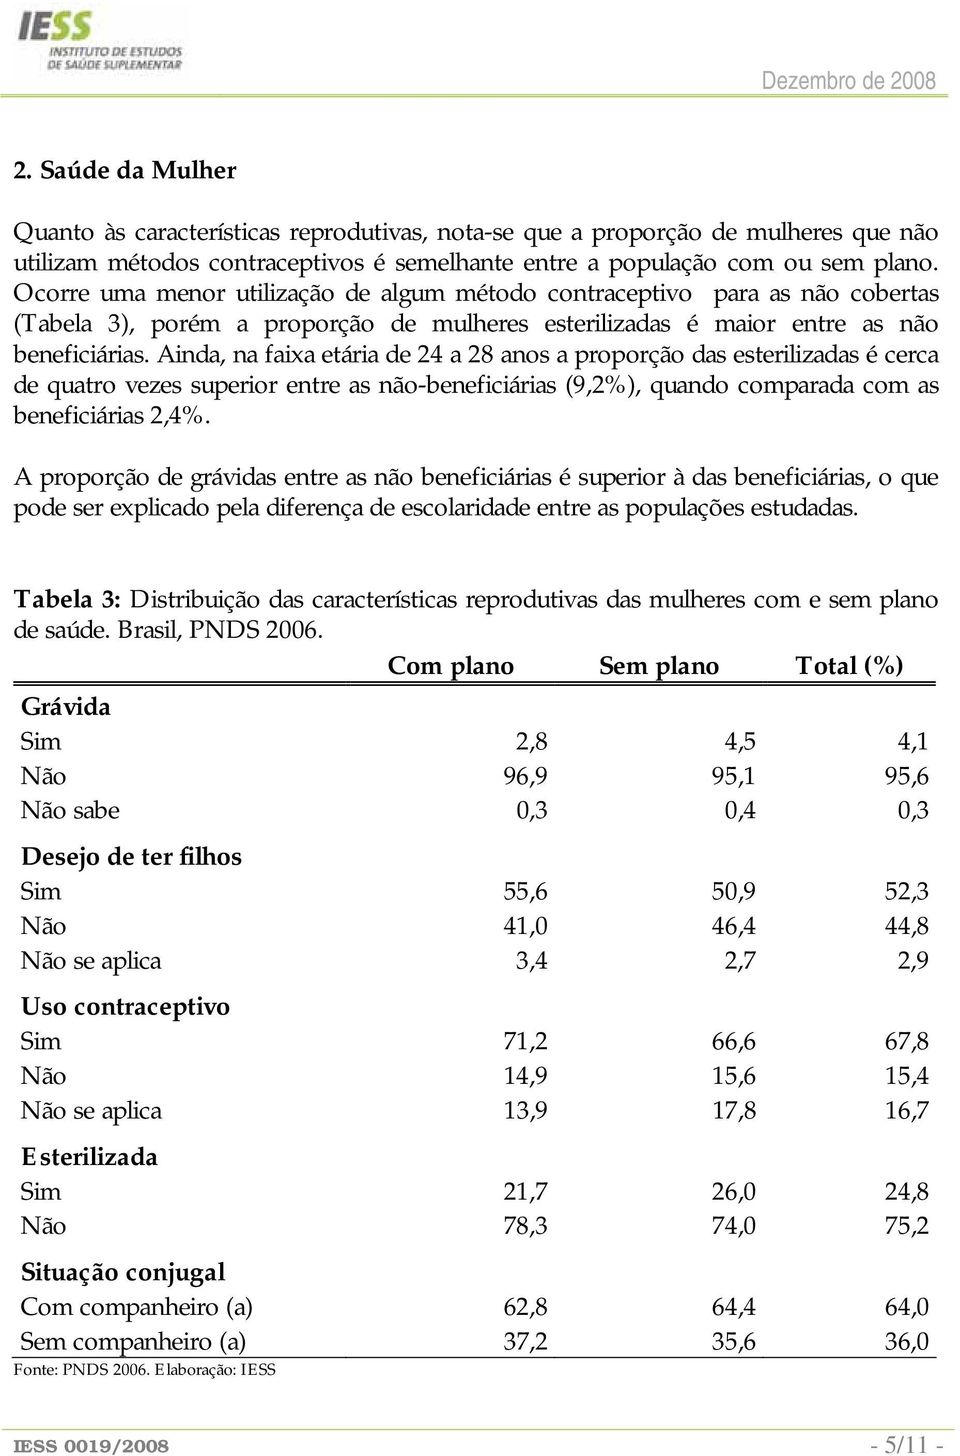 Ainda, na faixa etária de 24 a 28 anos a proporção das esterilizadas é cerca de quatro vezes superior entre as não-beneficiárias (9,2%), quando comparada com as beneficiárias 2,4%.